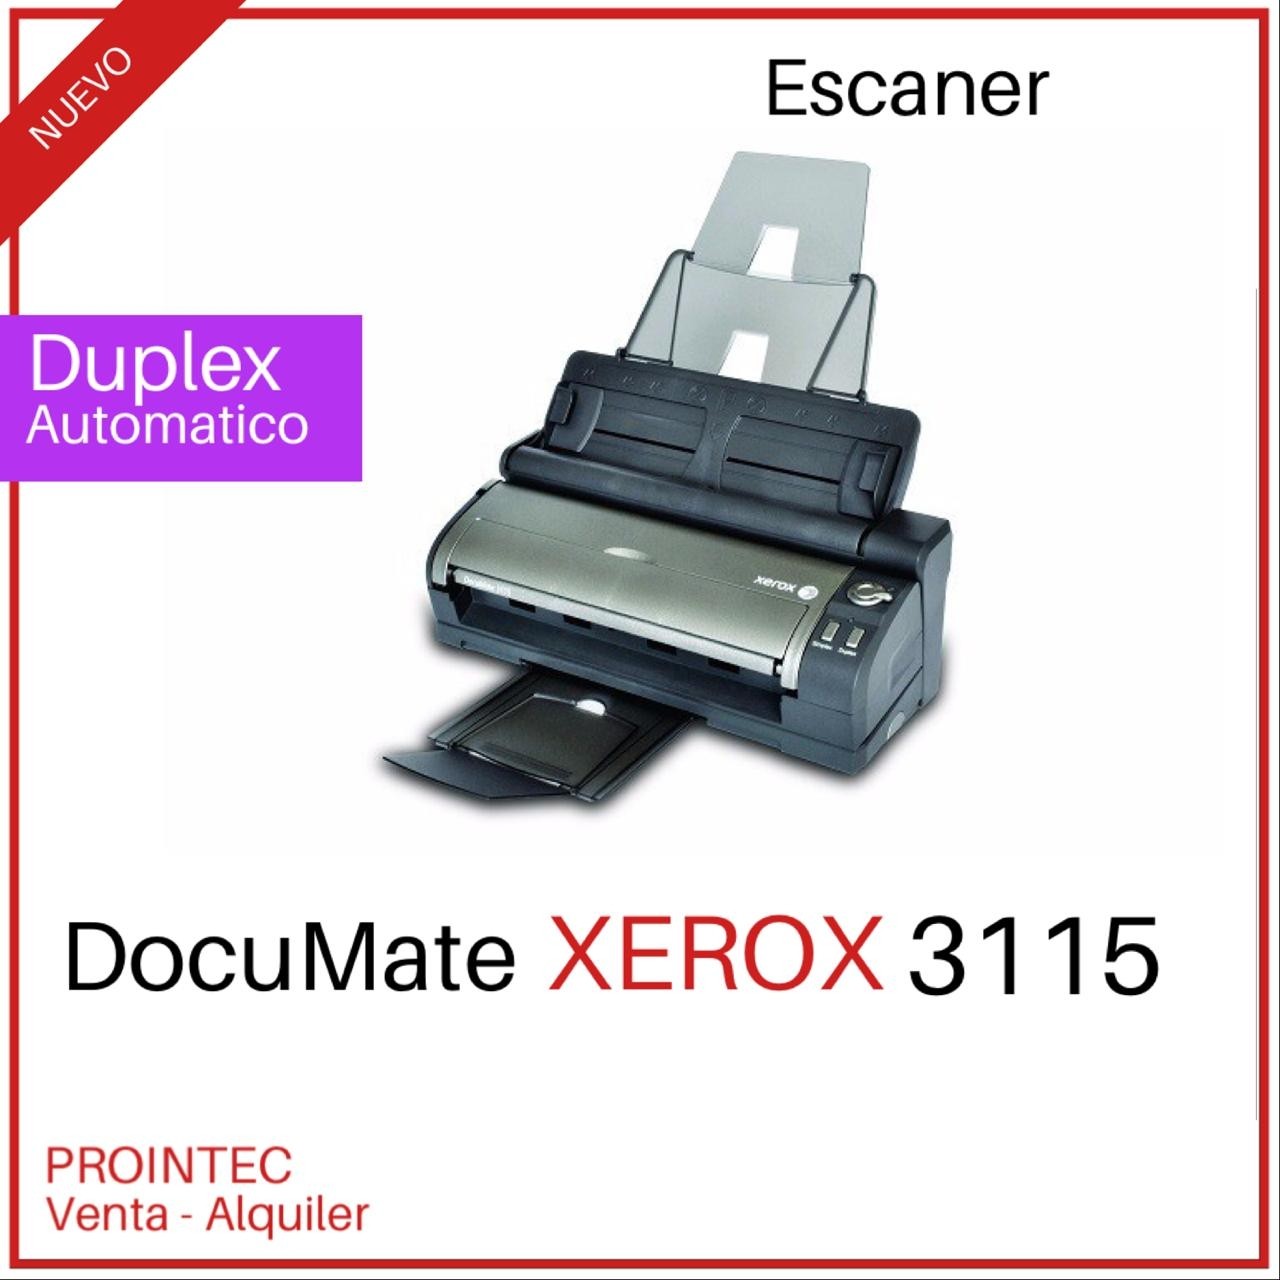 Escáner Xerox DocuMate 3115 Duplex